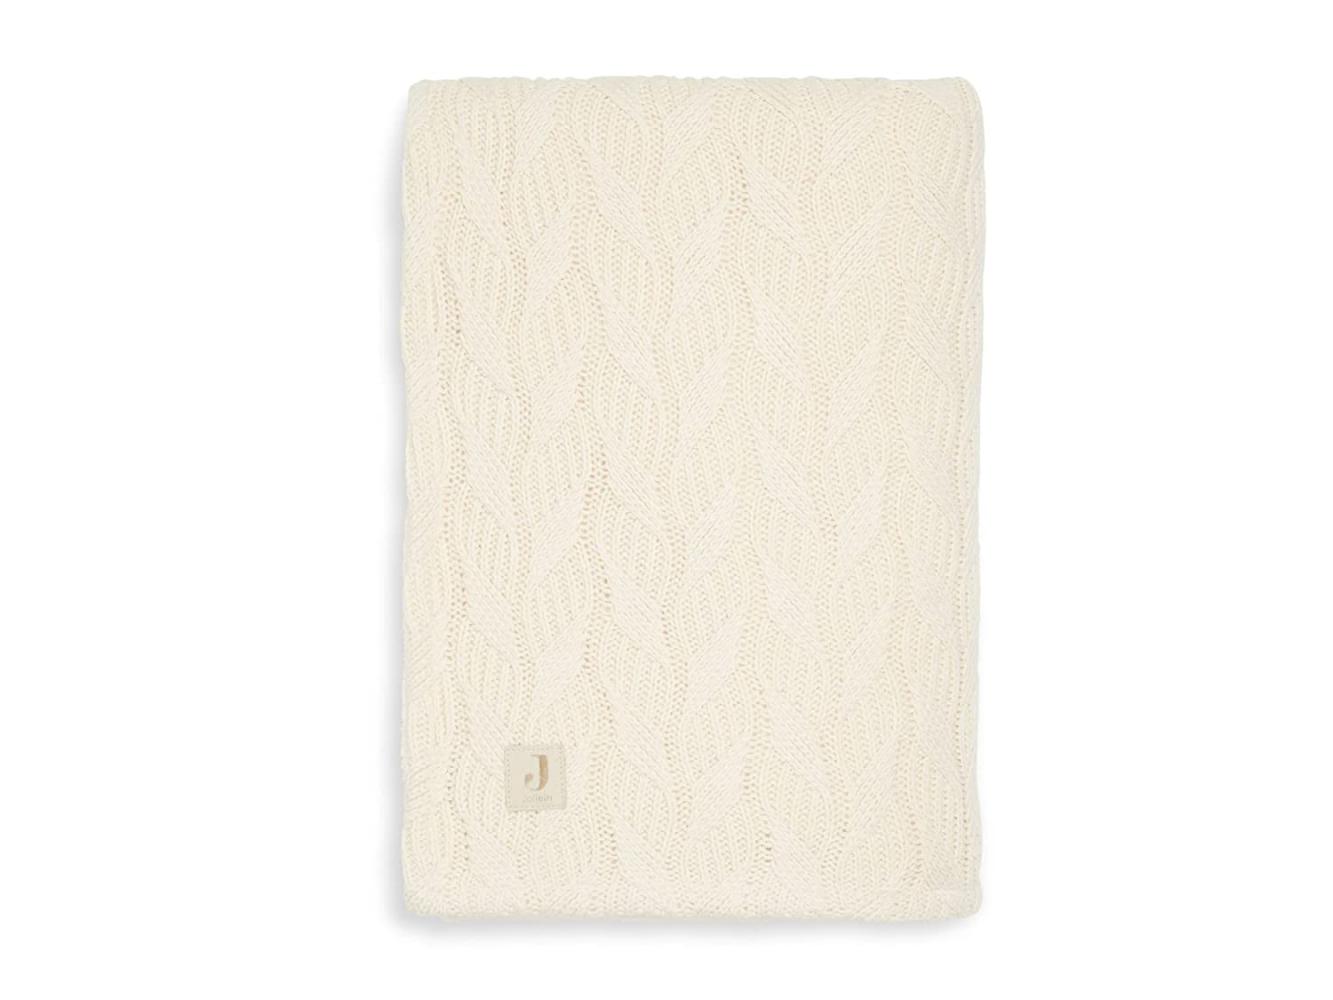 Jollein Spring Knit Fleece Bettdecke Ivory 100 x 150 cm Weiß off white Bild 1